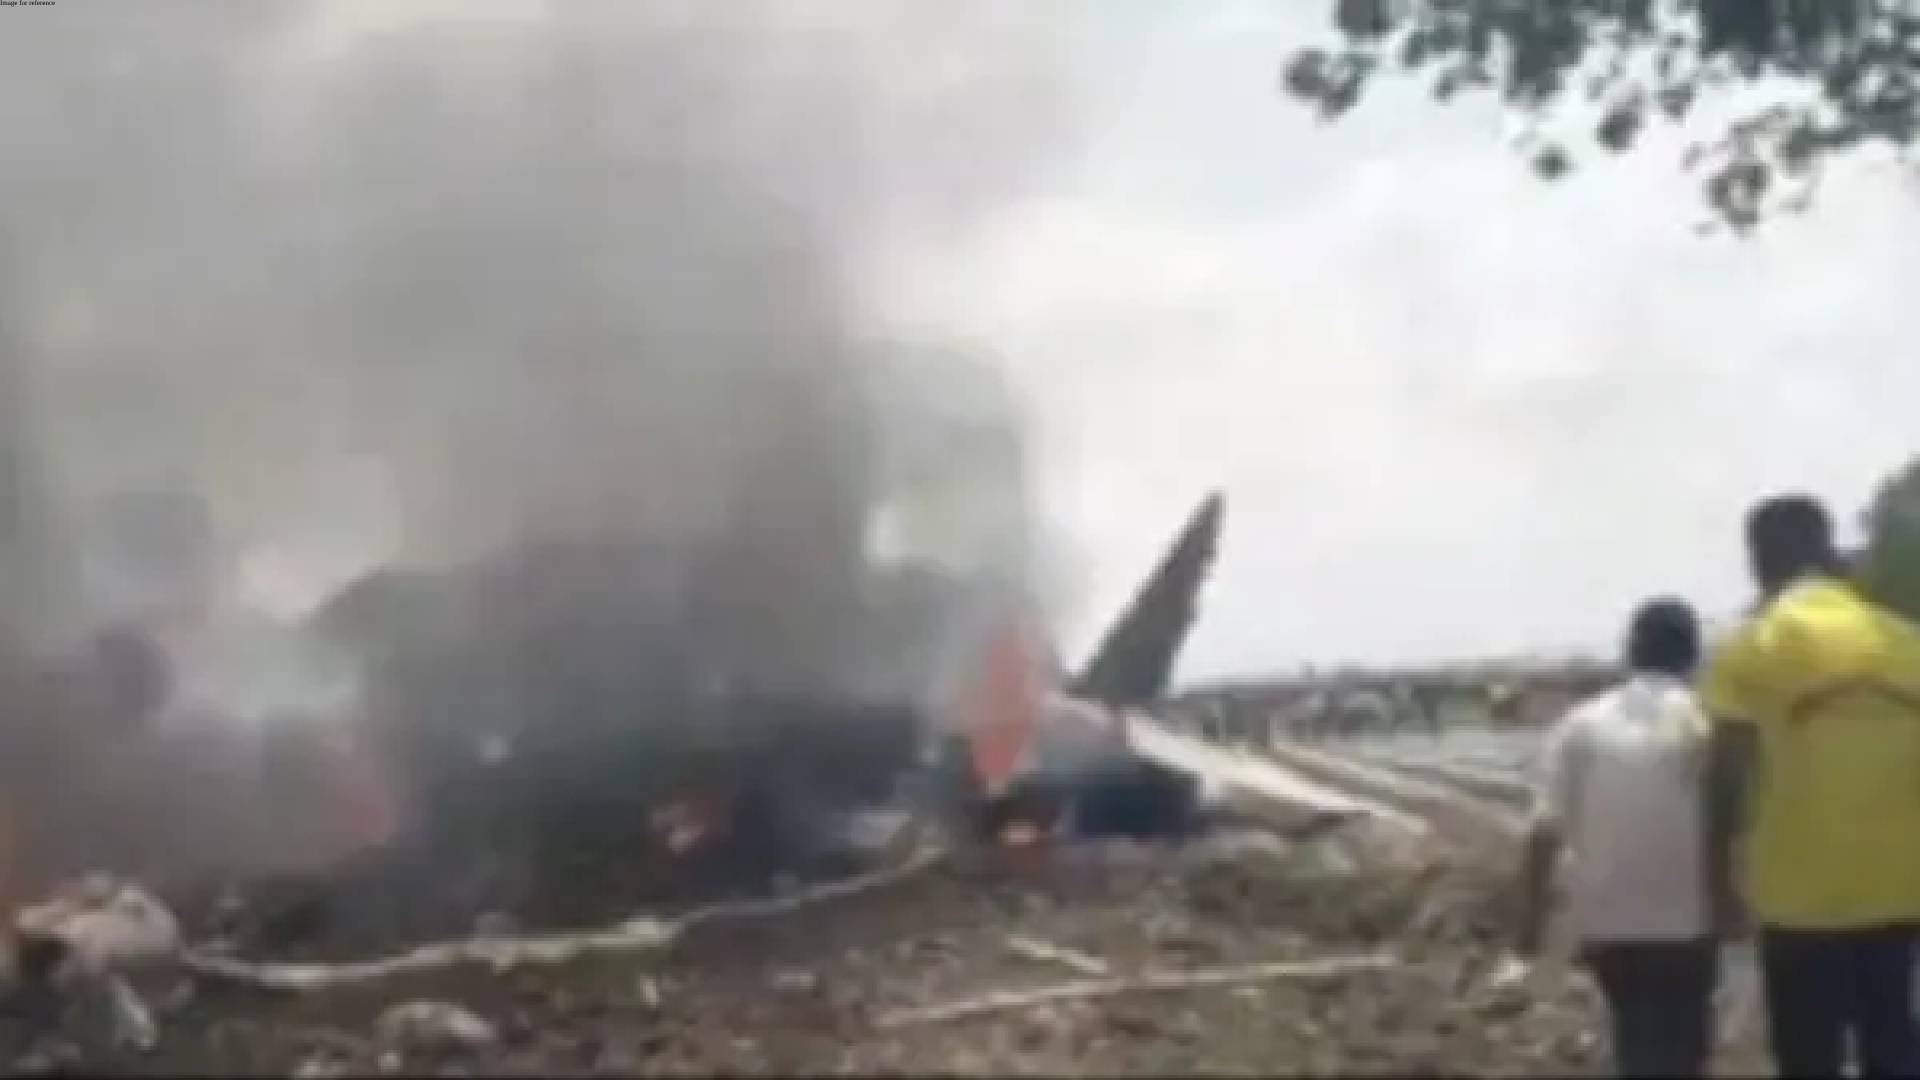 IAF’s Sukhoi fighter crashes in Nashik; pilot, co-pilot eject safely